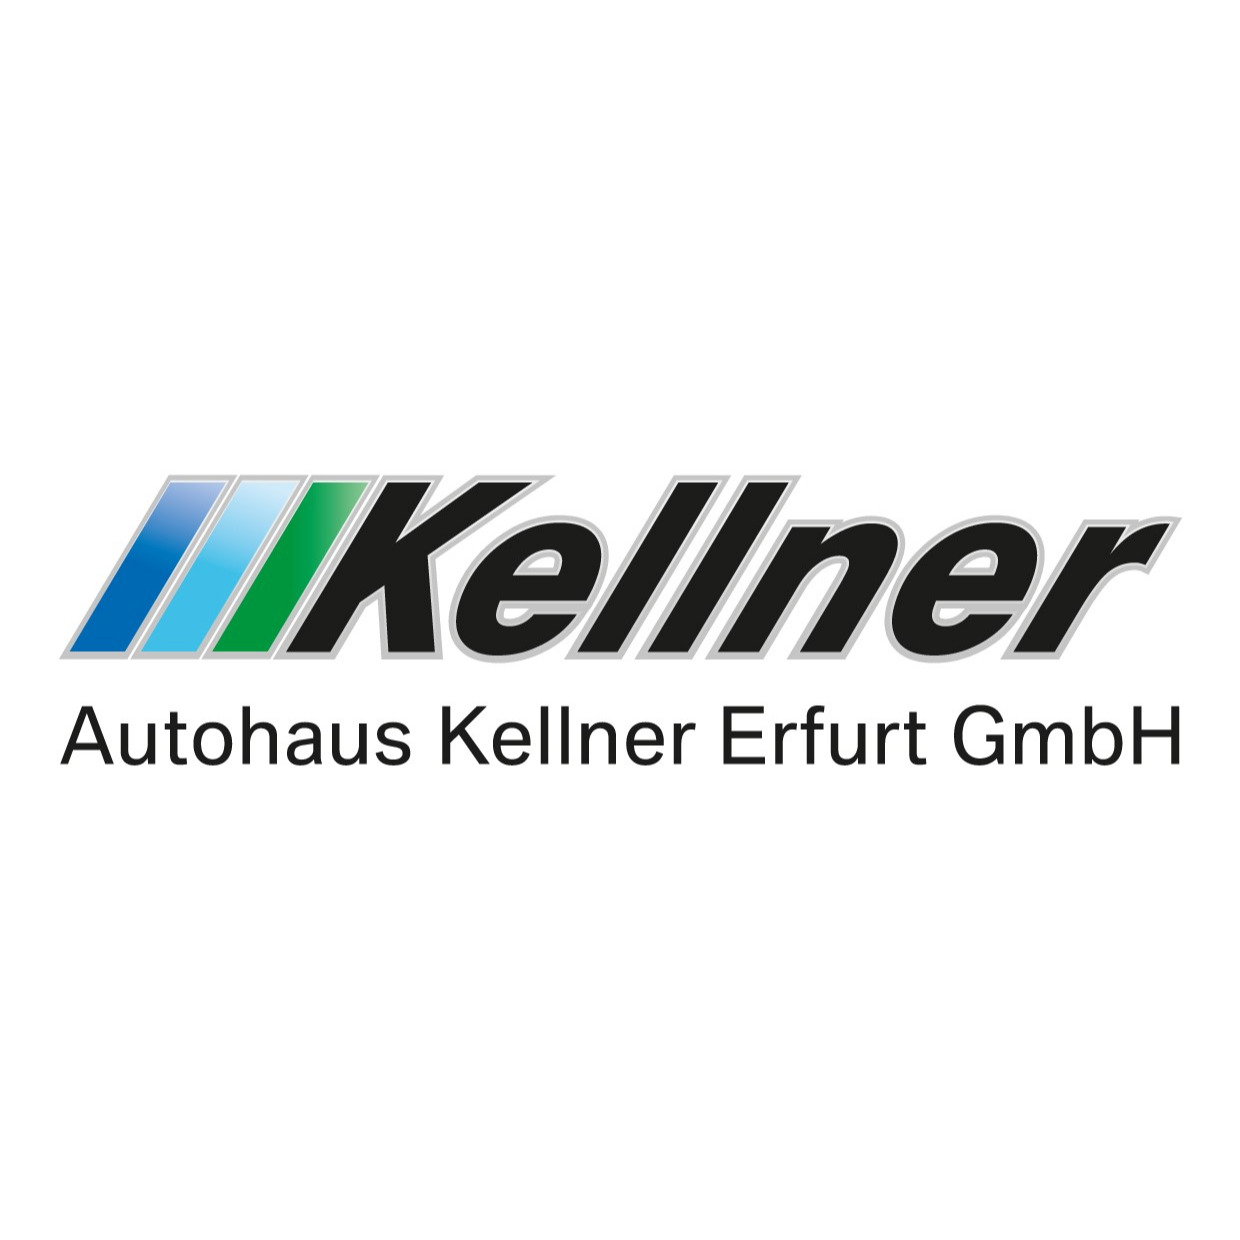 Autohaus Kellner Erfurt GmbH in Erfurt - Logo